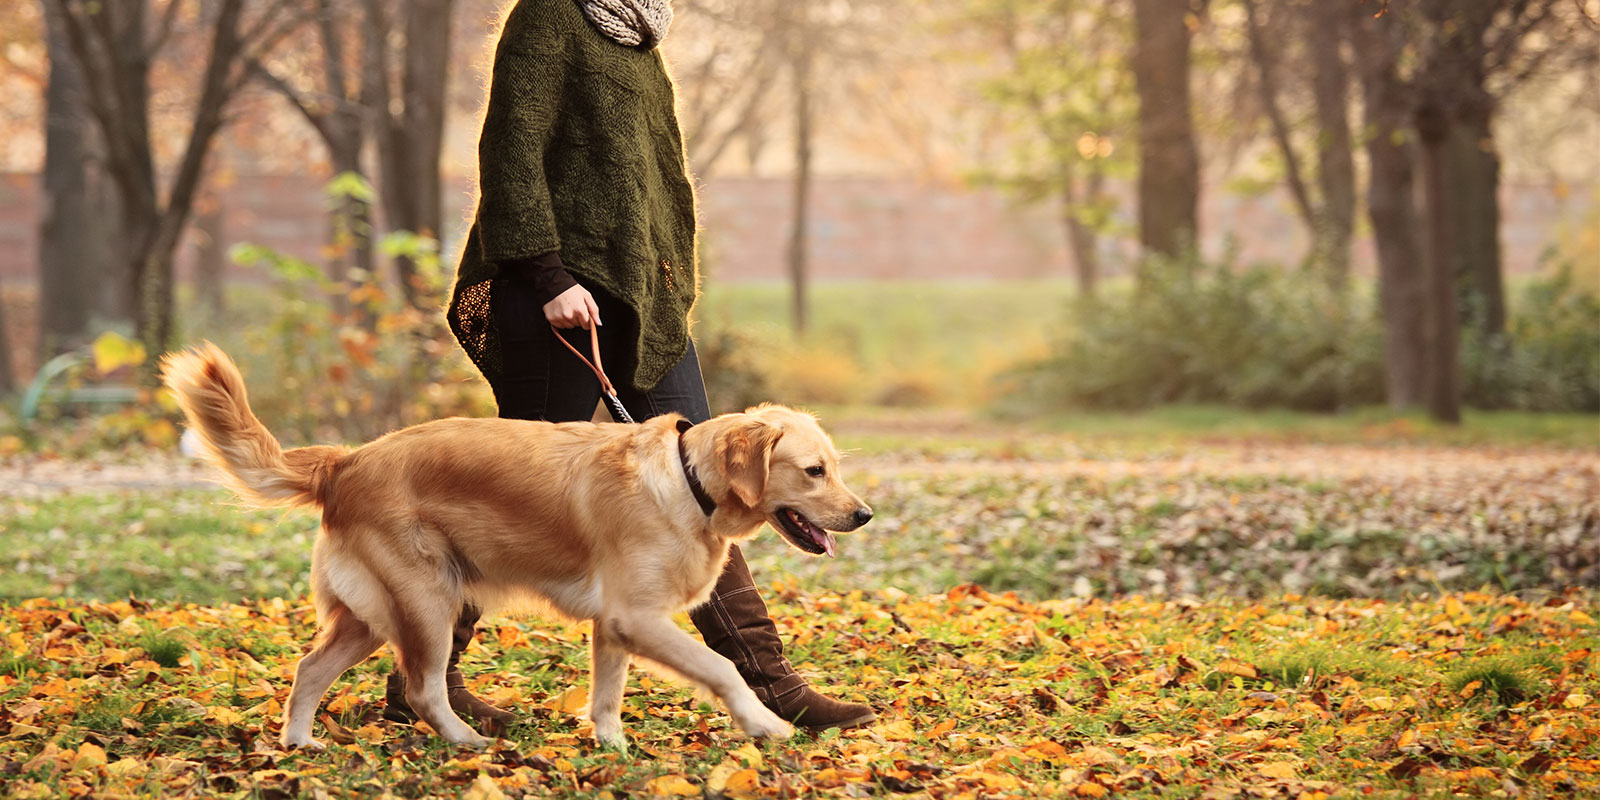 women walking her dog through fall leaves